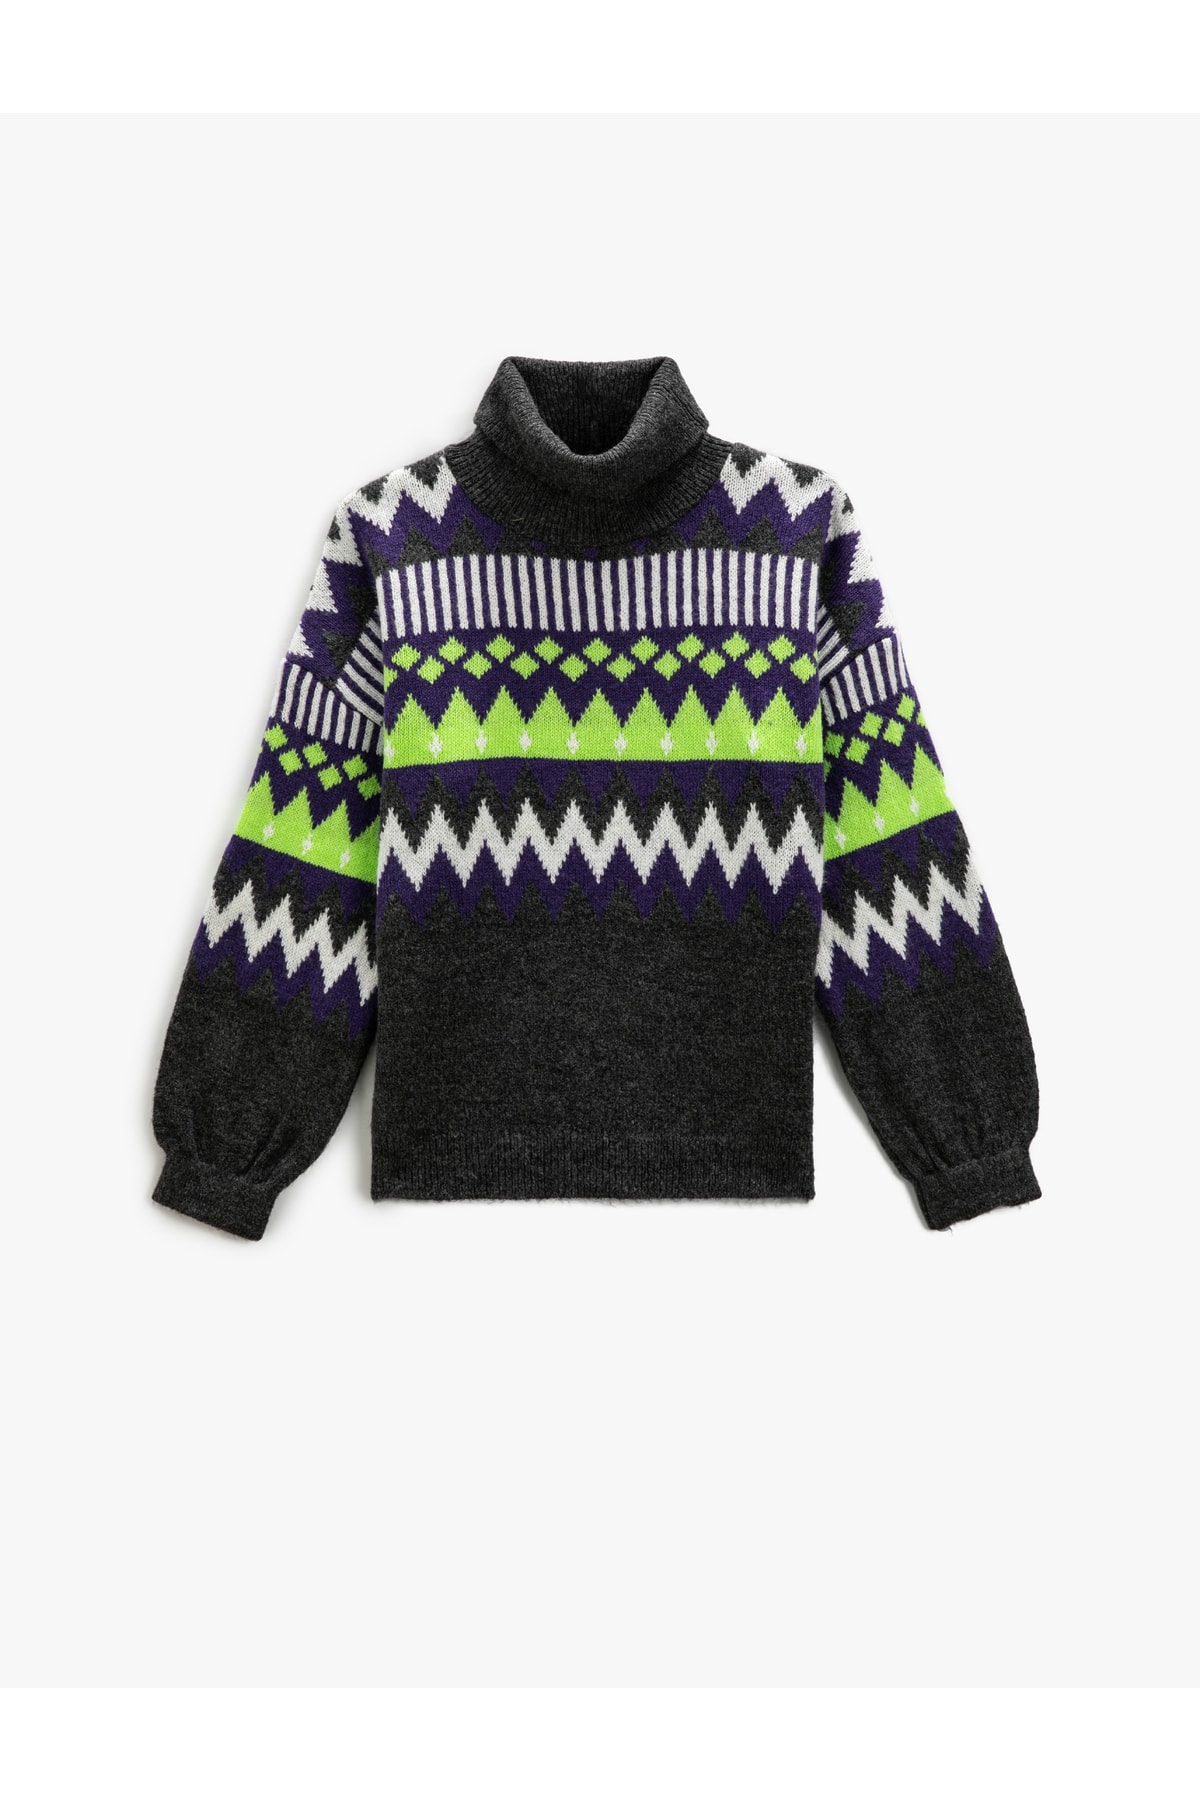 Levně Koton Turtleneck Knitwear Sweater Geometric Pattern Long Sleeve